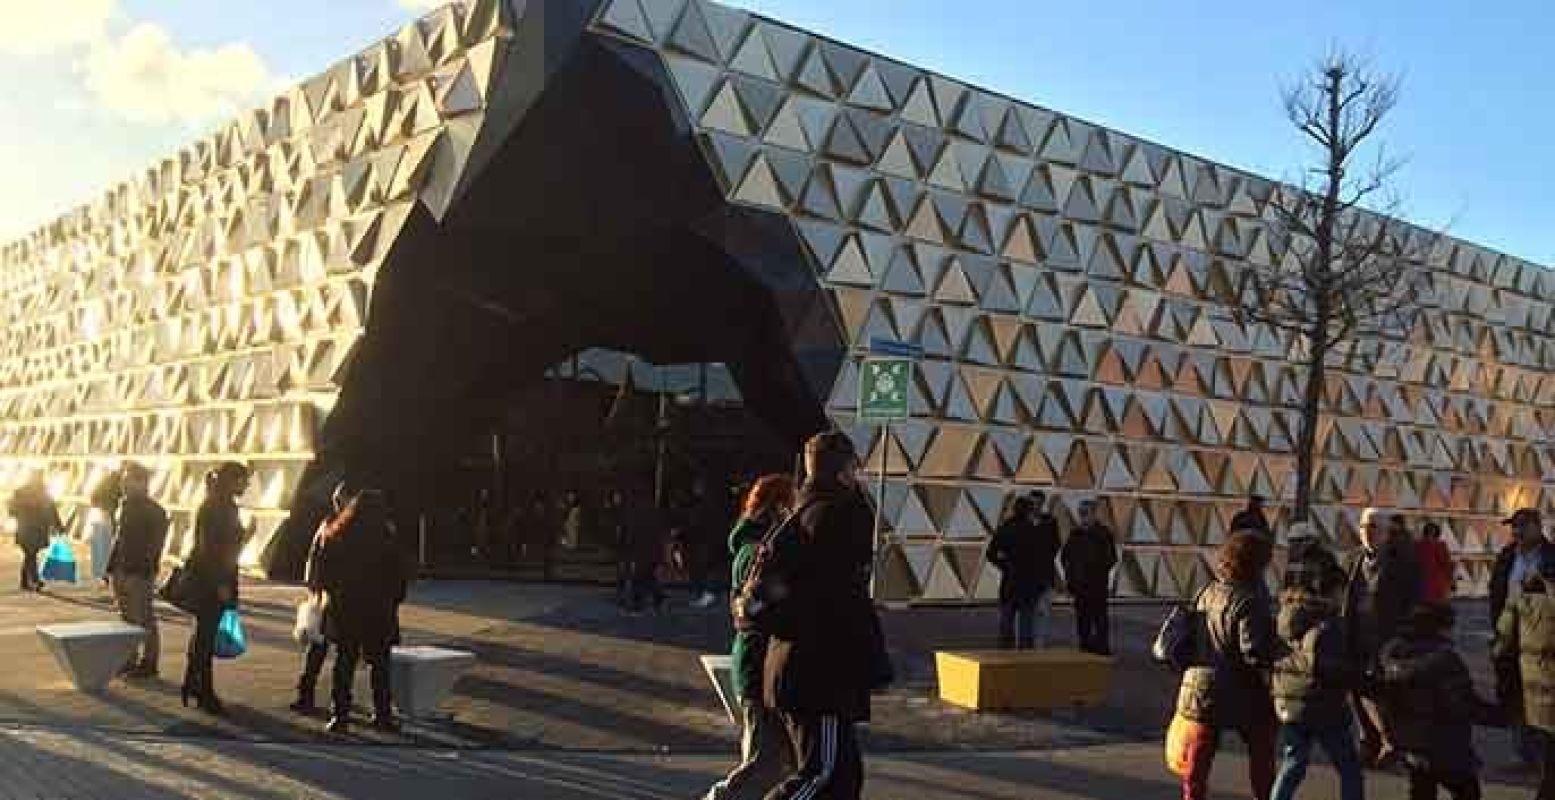 De glimmende Goudsouk wordt officieel geopend. Foto: Bazaar Beverwijk